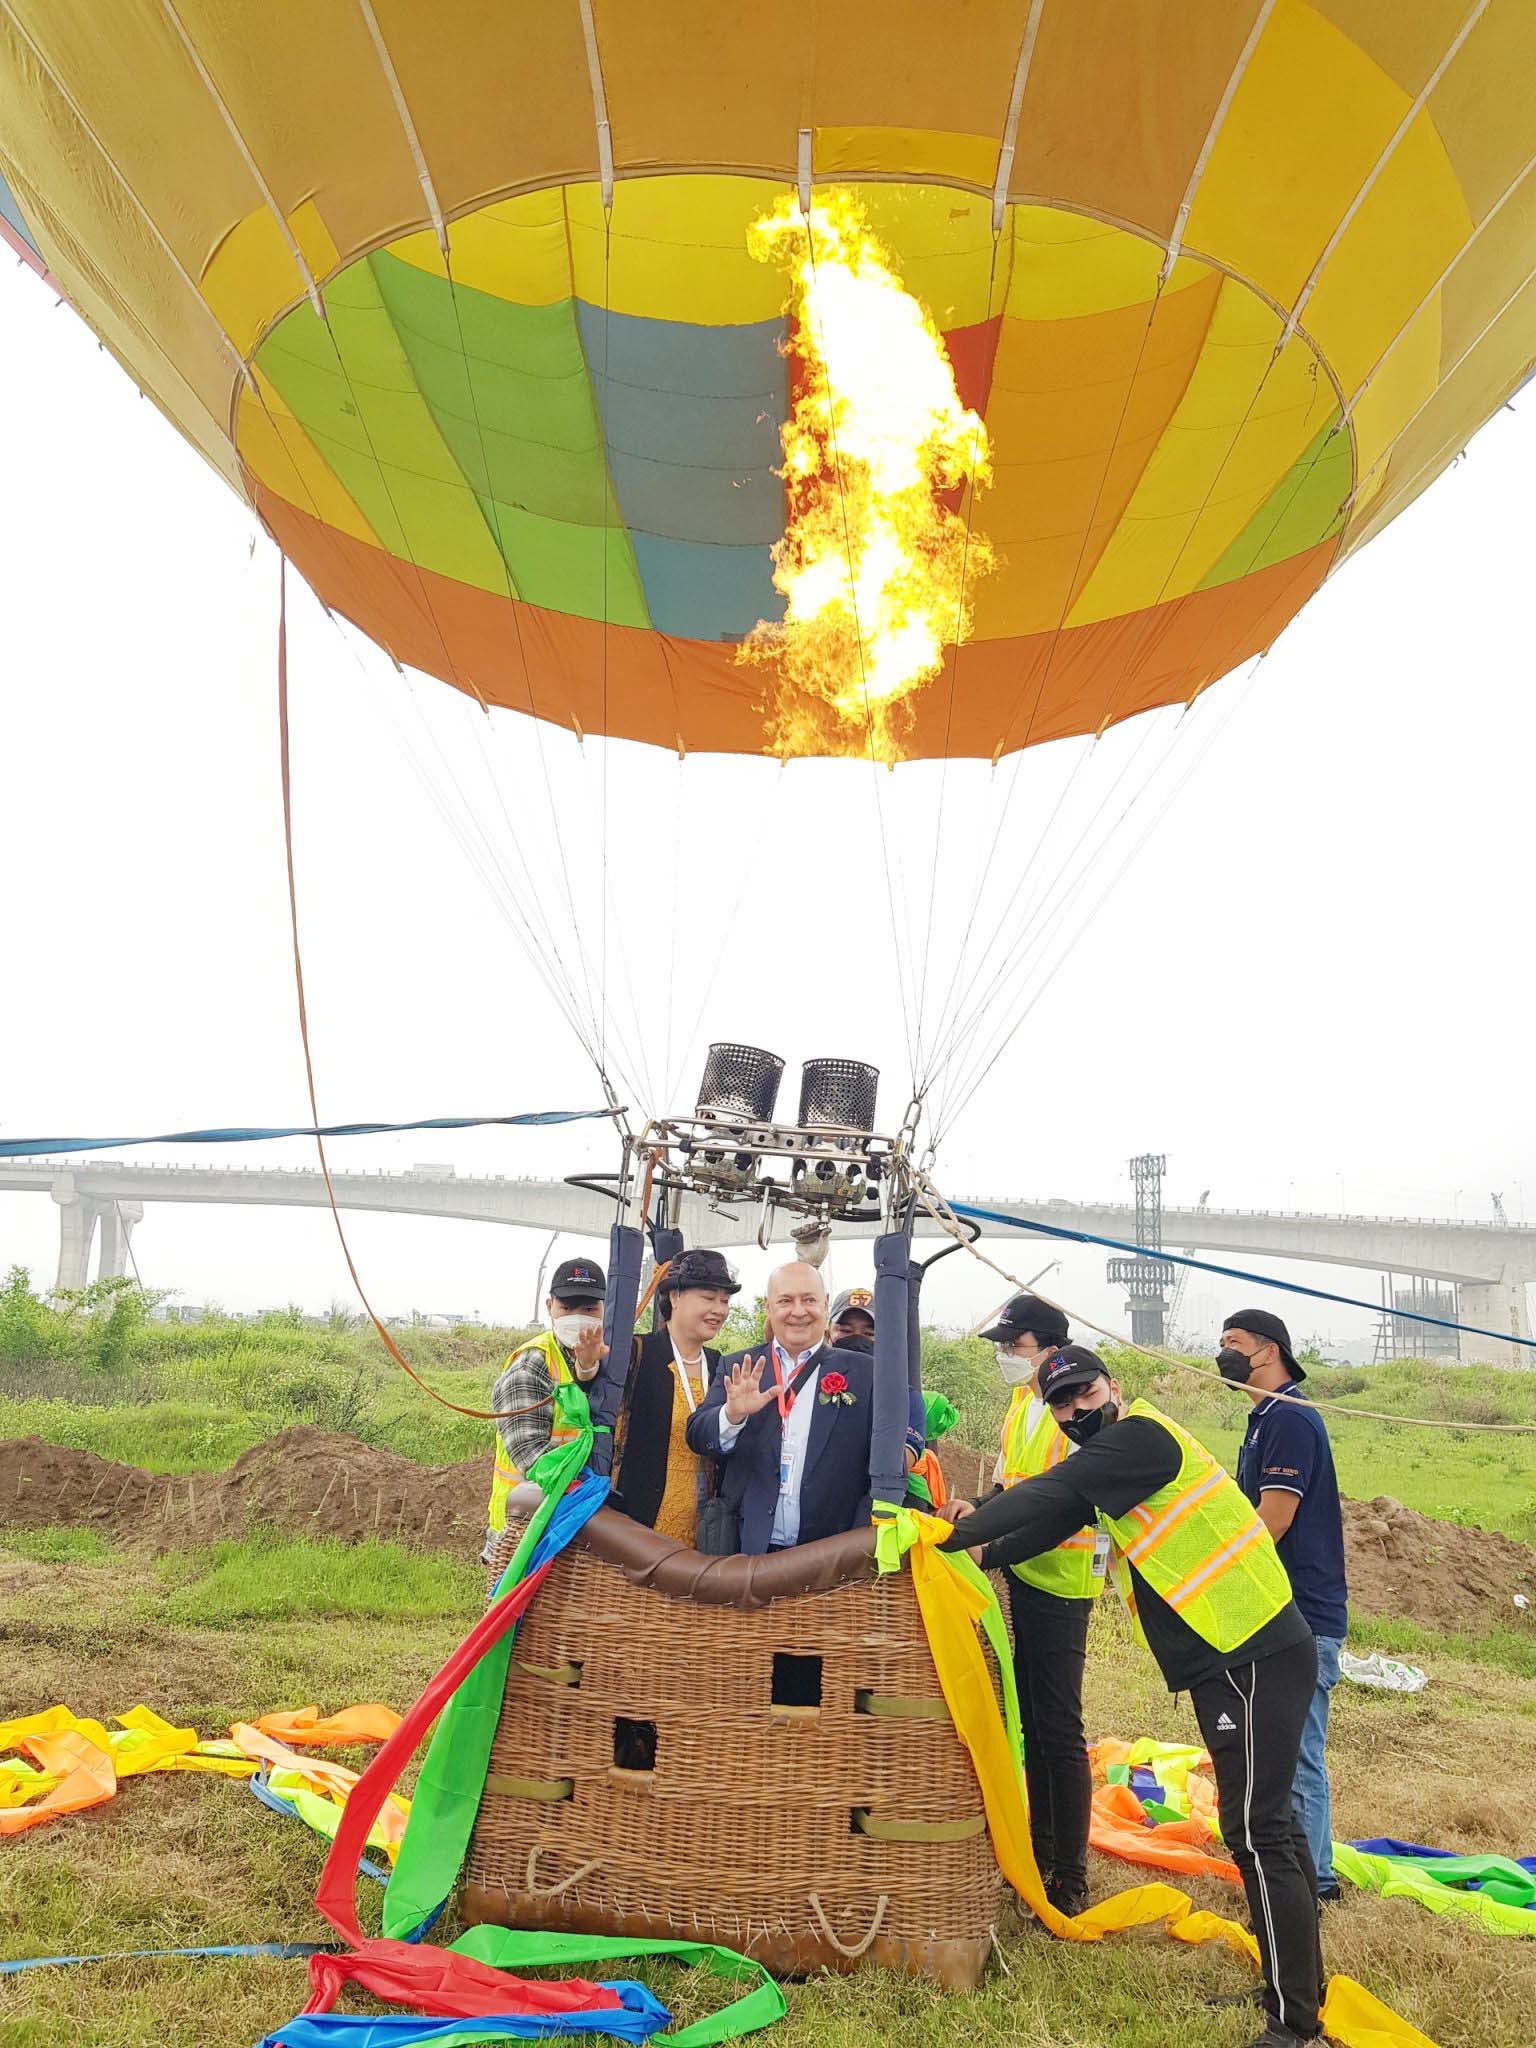 Lễ hội khinh khí cầu ở Hà Nội: Người dân háo hức chờ bay miễn phí - Ảnh 7.